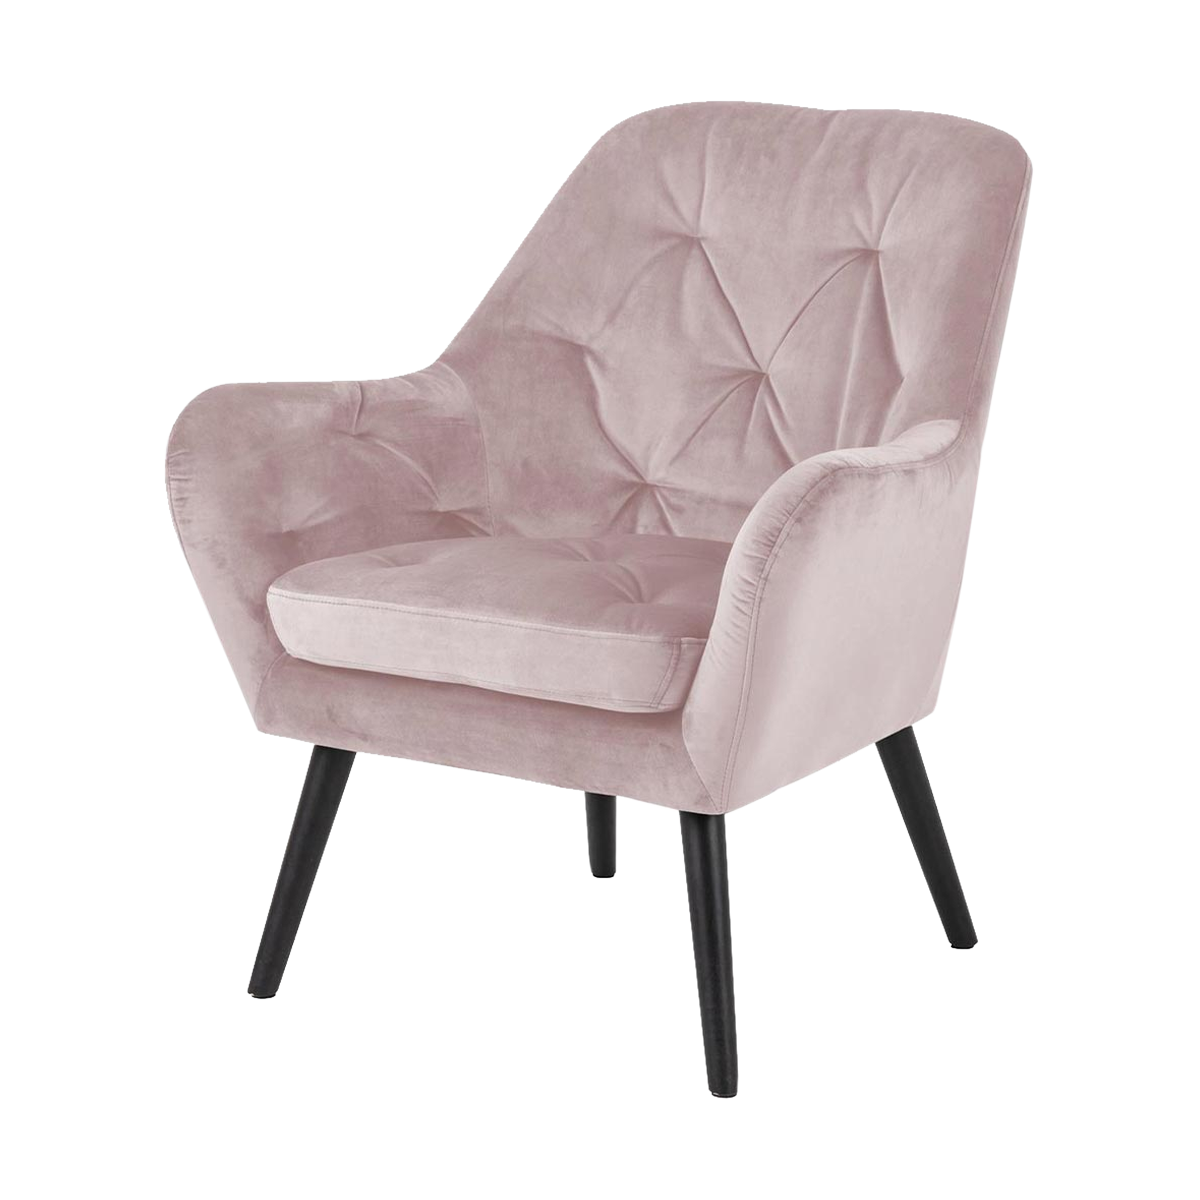 Arian fauteuil velvet oud roze